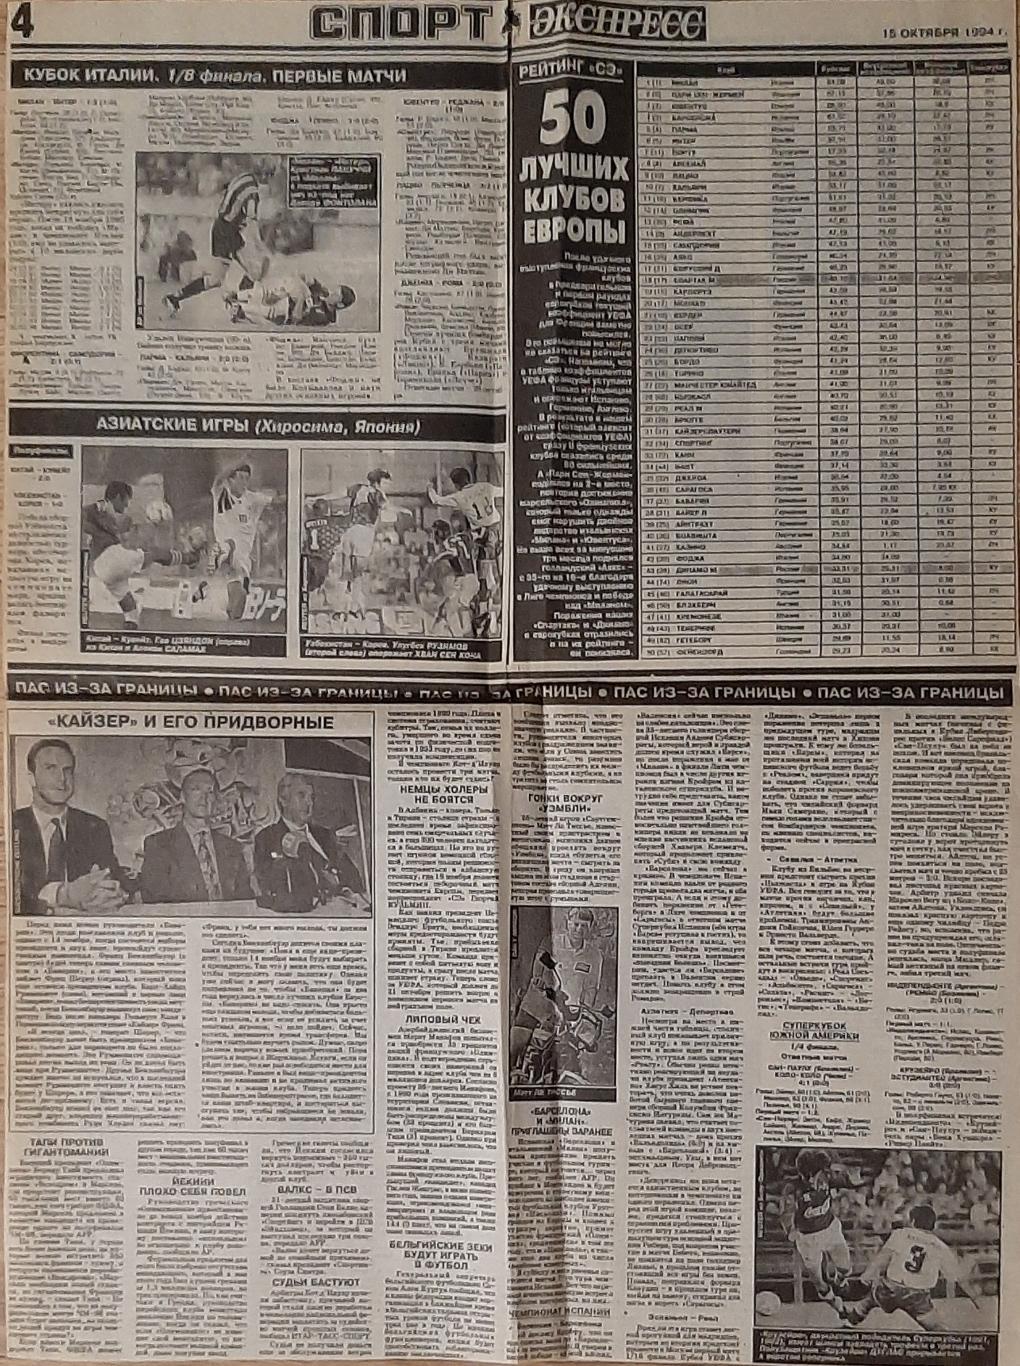 Вирізка з газети Спорт Экспресс#191 (15.10.1994) 3